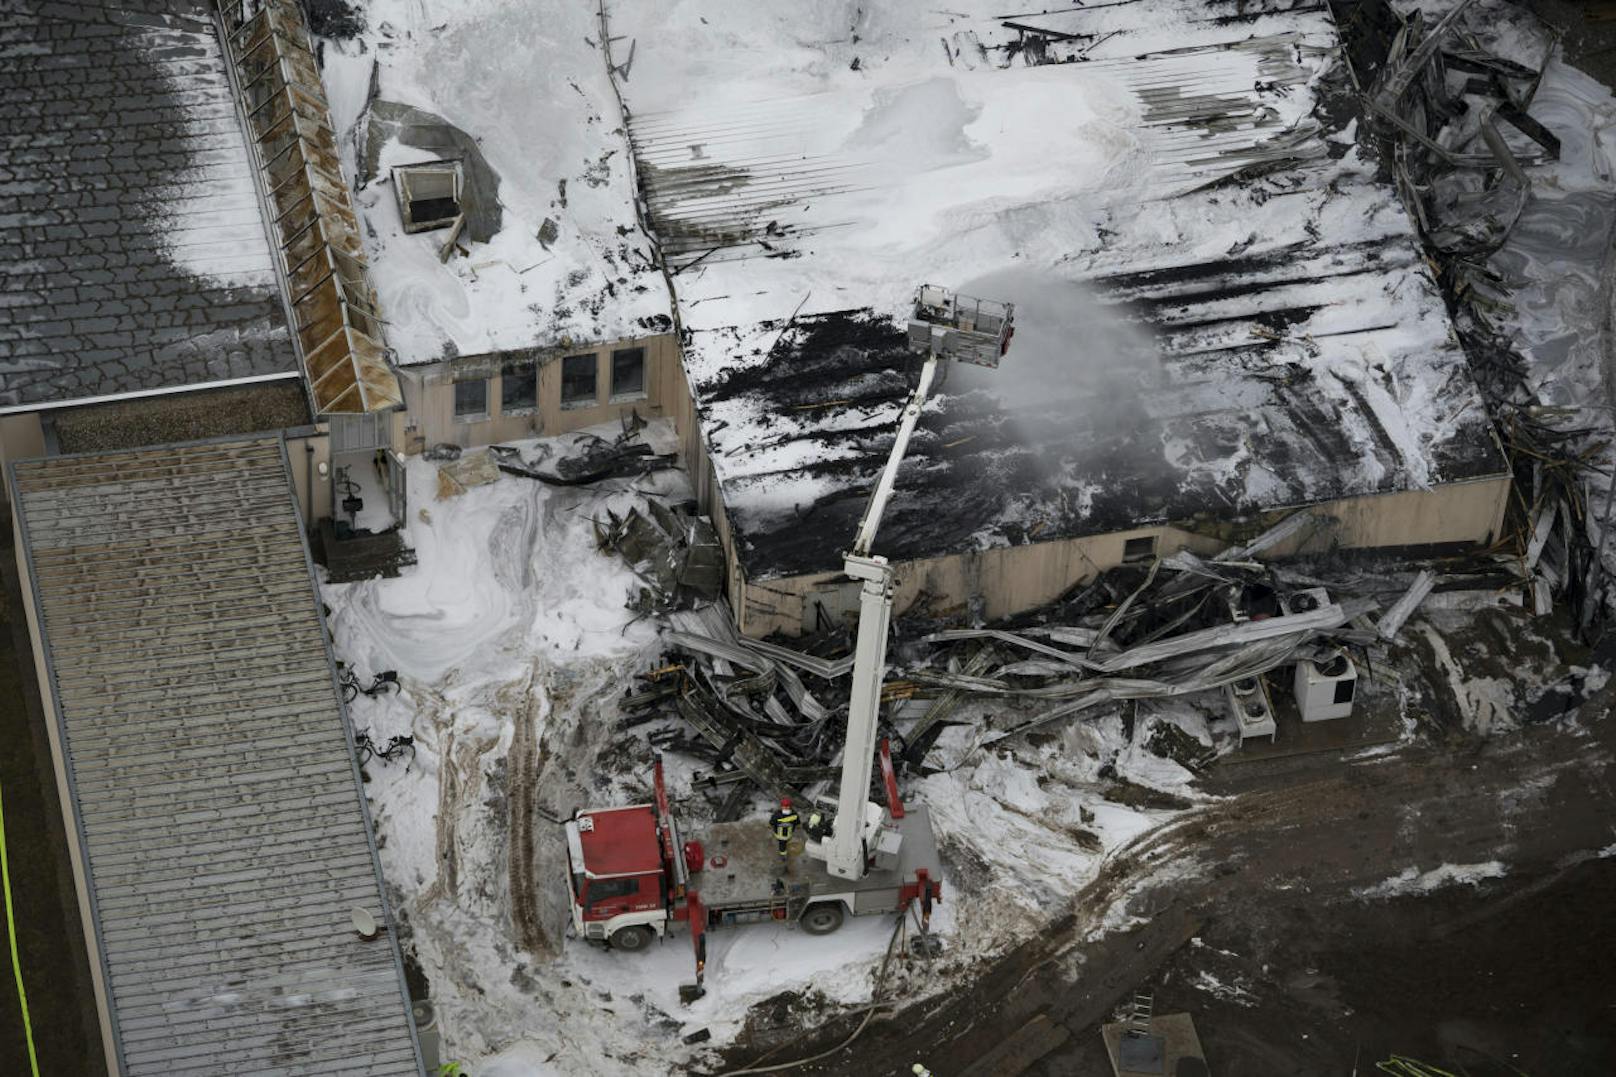 Luftaufnahmen aus der zerstörten OMV-Gasstation